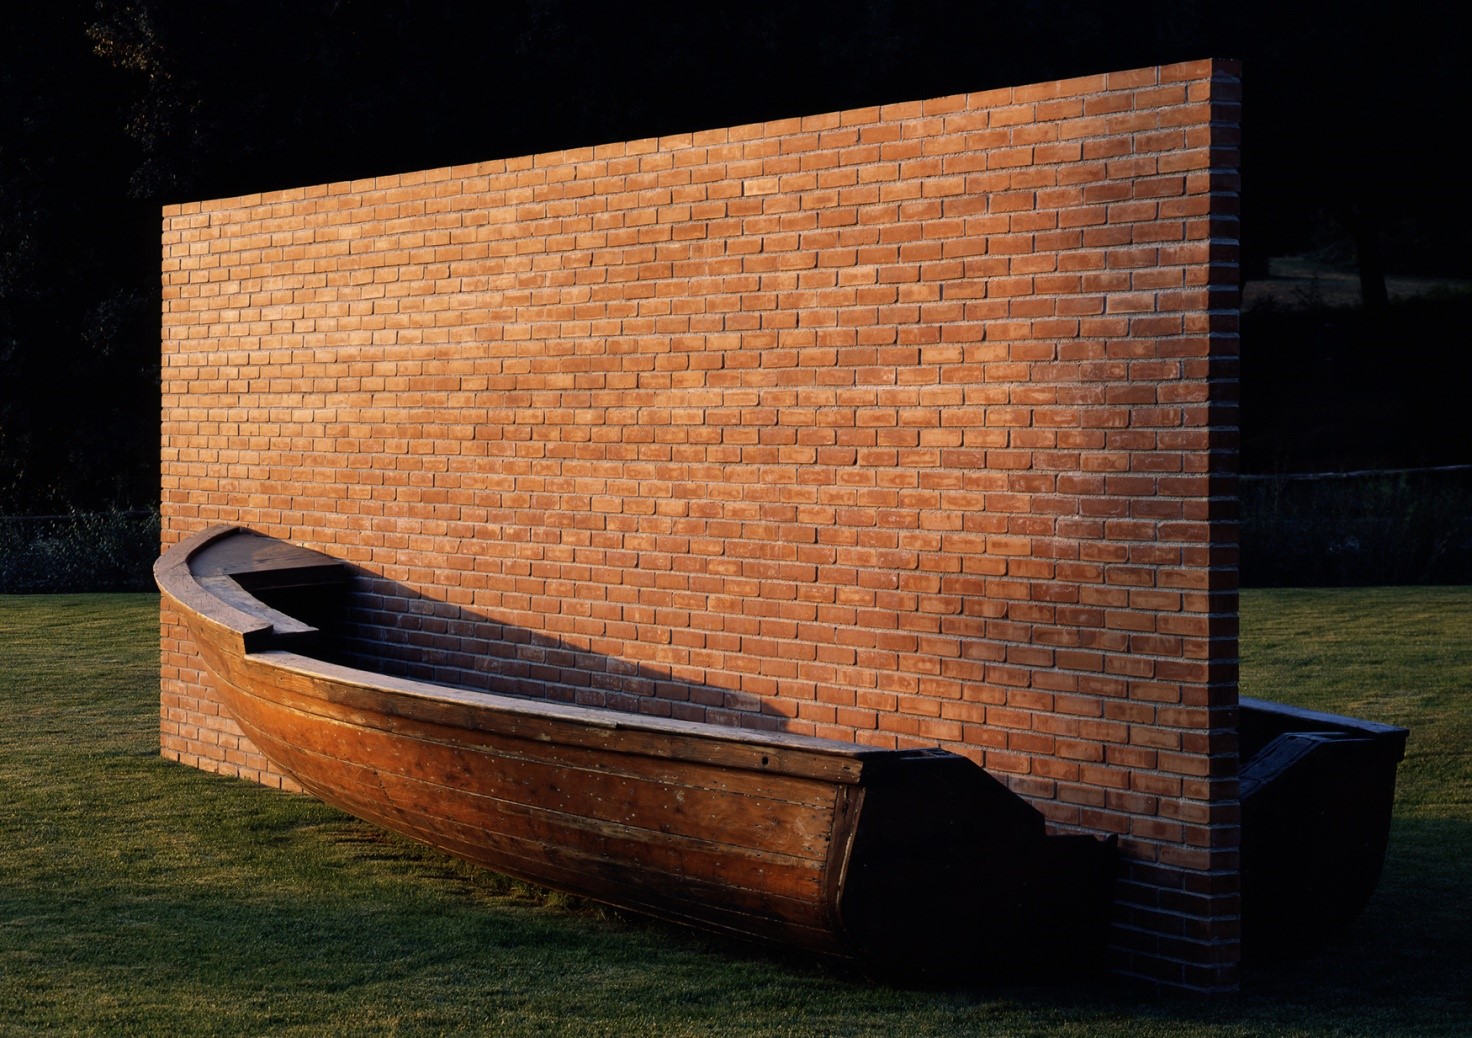 L'ideologia. L'immagine mostra un'opera d'arte del 1979 dell'artista Fabio Mauri chiamata "Muro d'Europa": una barca di legno divisa a metà da un muro di mattoni su un prato sintetico.